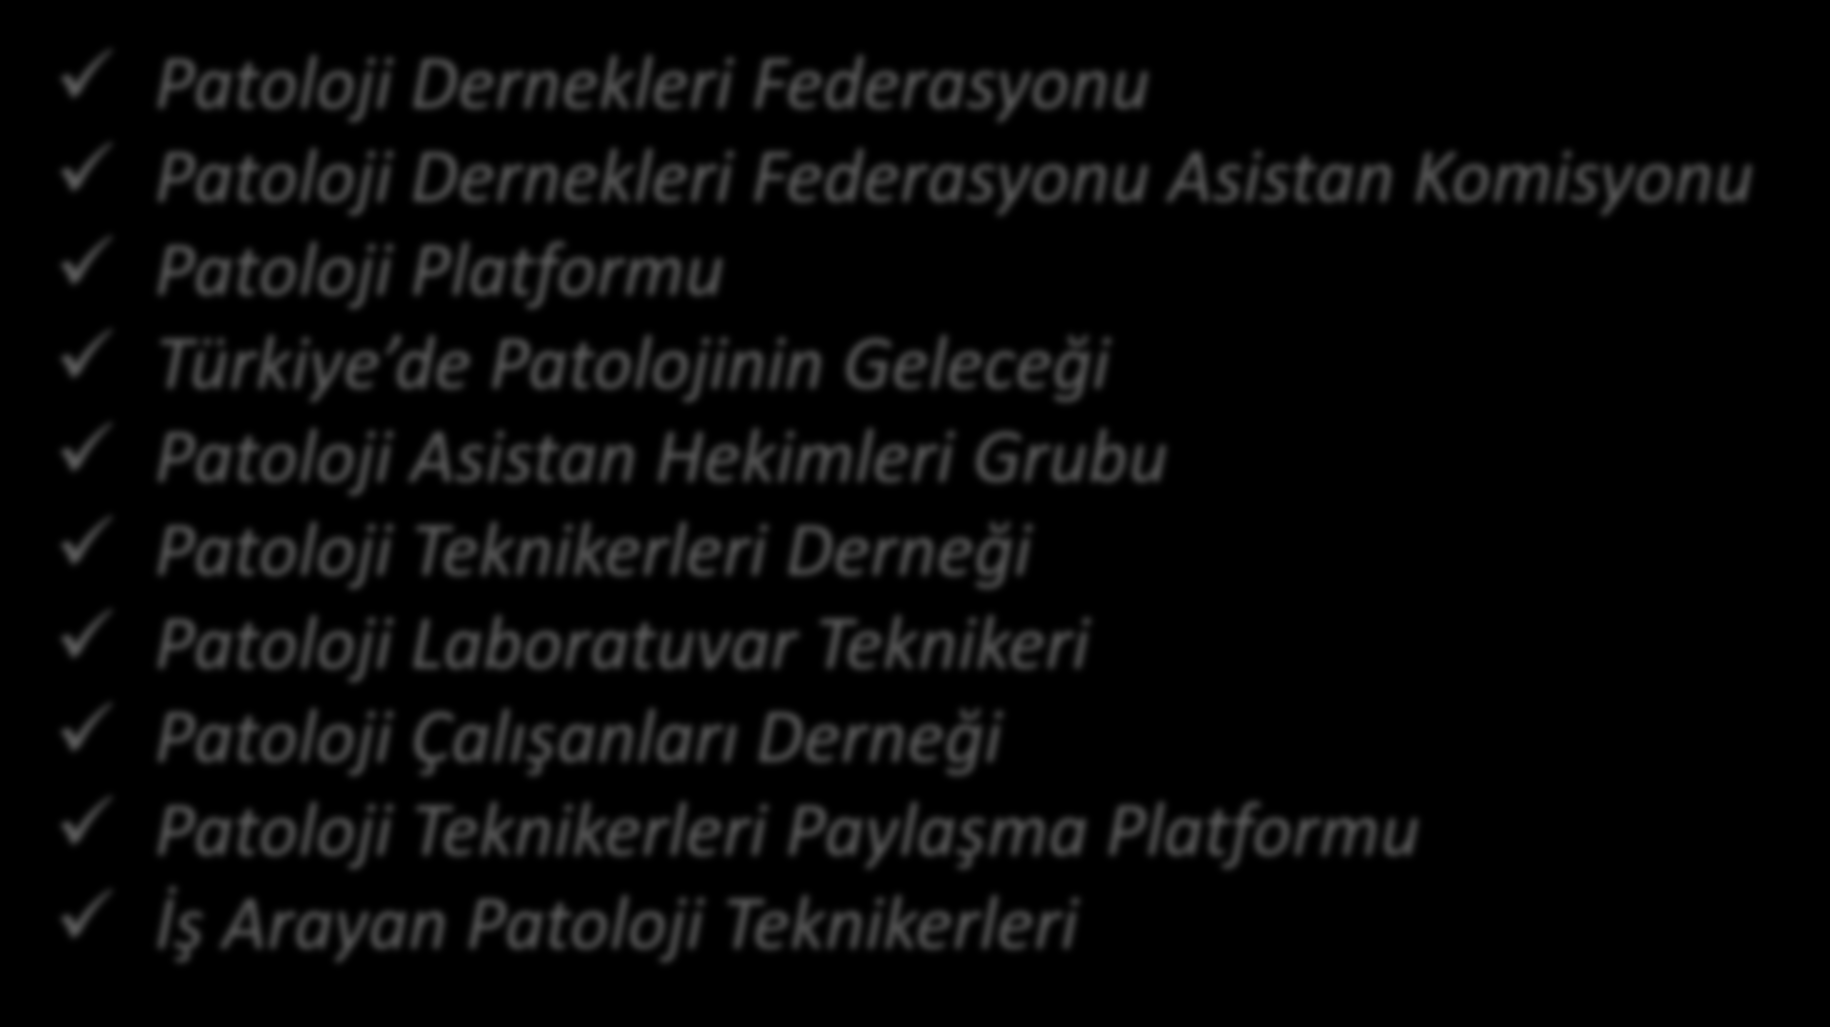 Facebook, Keyword: «Patoloji» Patoloji Dernekleri Federasyonu Patoloji Dernekleri Federasyonu Asistan Komisyonu Patoloji Platformu Türkiye de Patolojinin Geleceği Patoloji